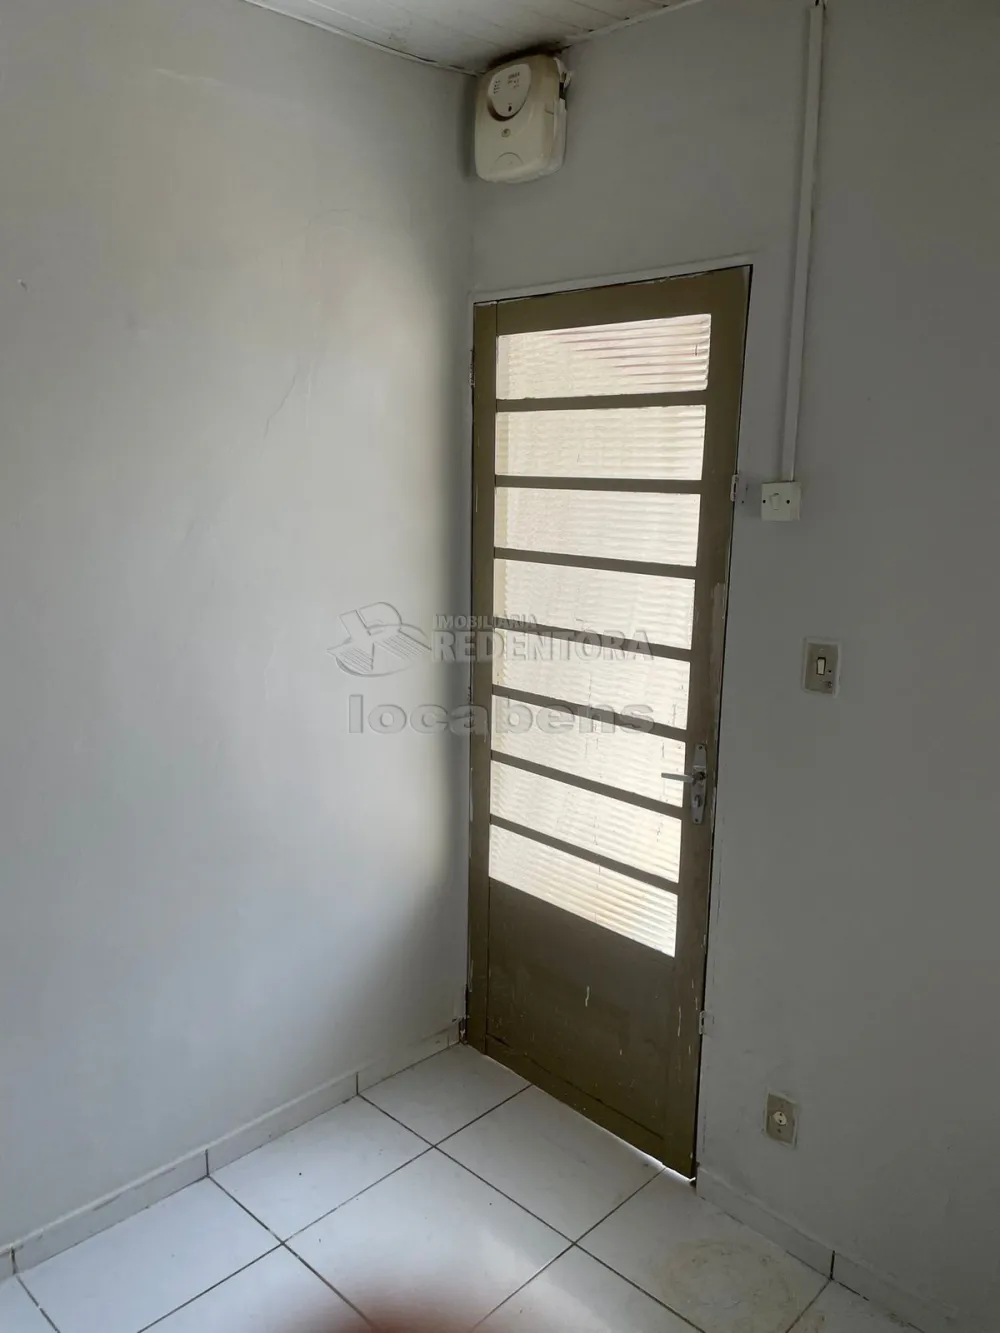 Comprar Casa / Padrão em São José do Rio Preto R$ 190.000,00 - Foto 2